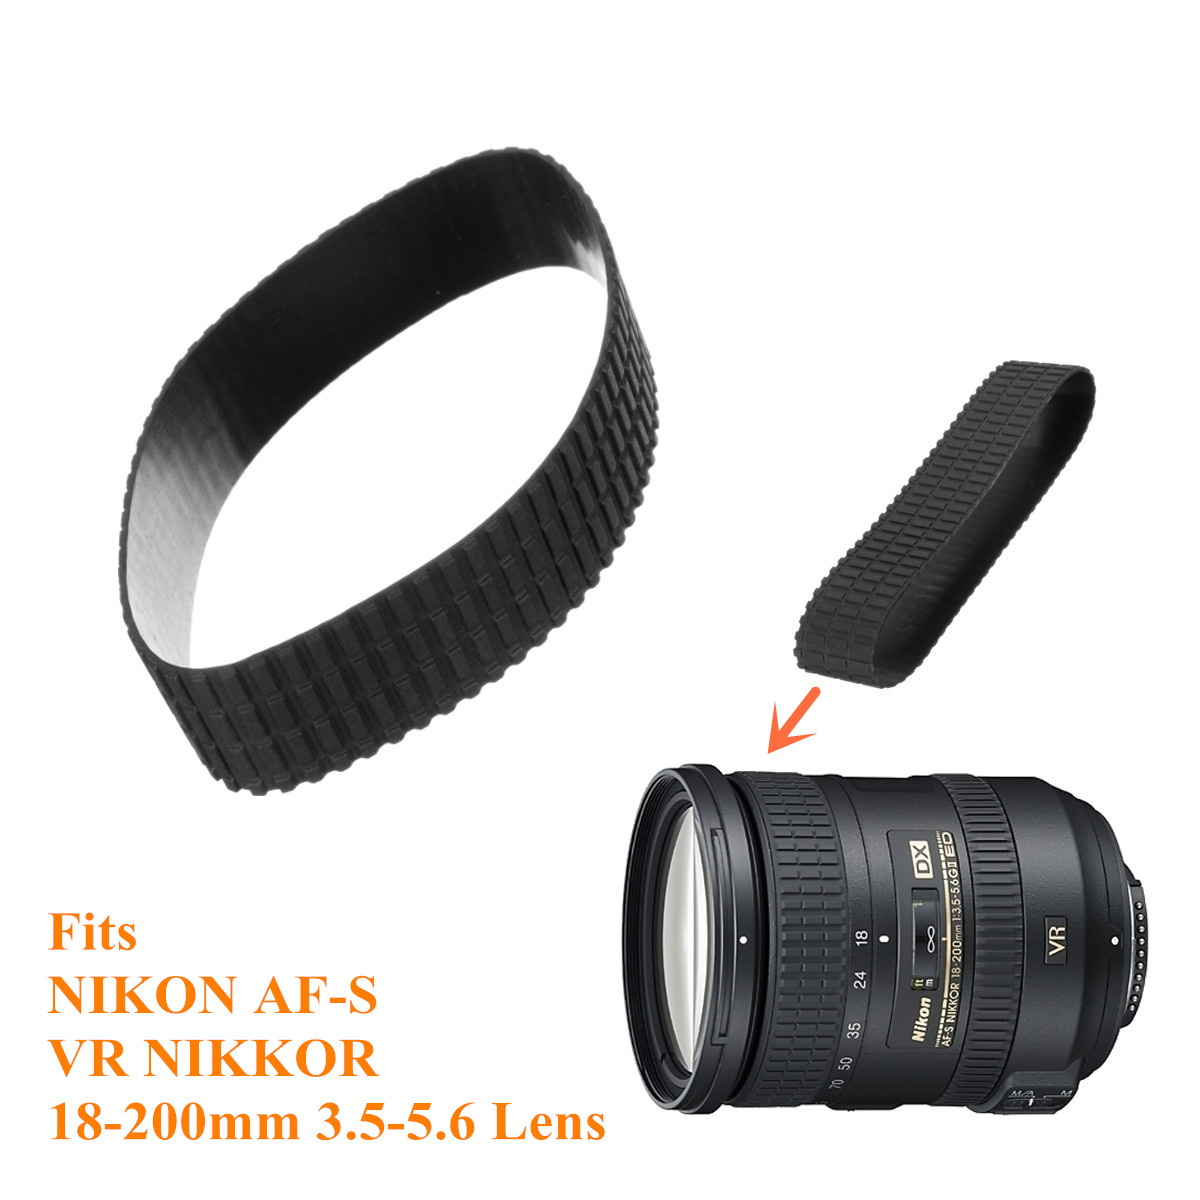 Zoom-Rubber-Ring-Replace-Part-For-Nikon-AF-S-VR-NIKKOR-18-200MM-f35-56G-Lens-1174585